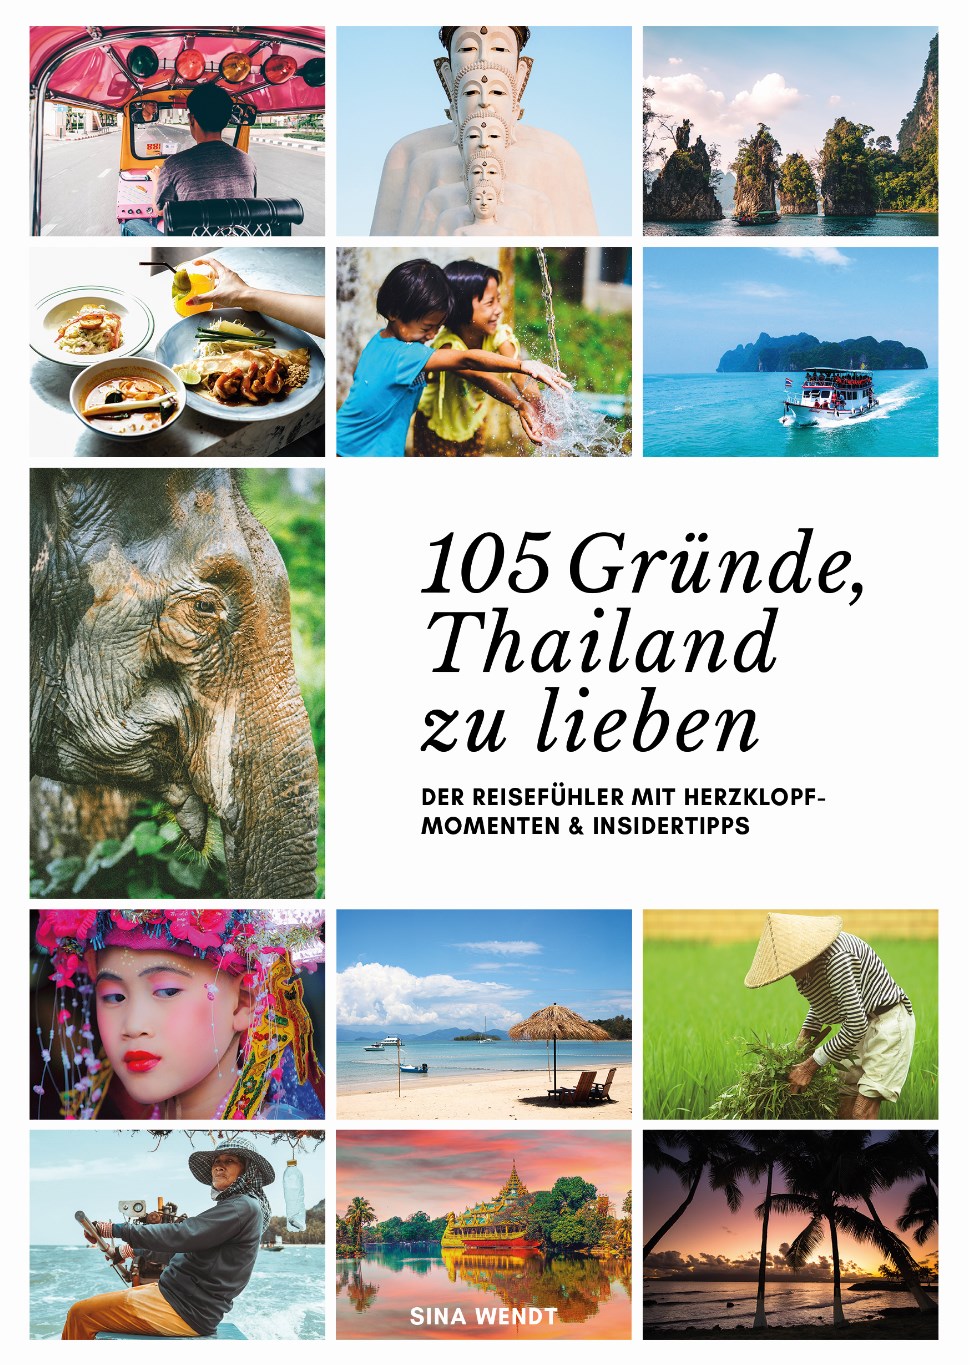 105 Gründe, Thailand zu lieben - Cover Thailand Reiseführer 2019